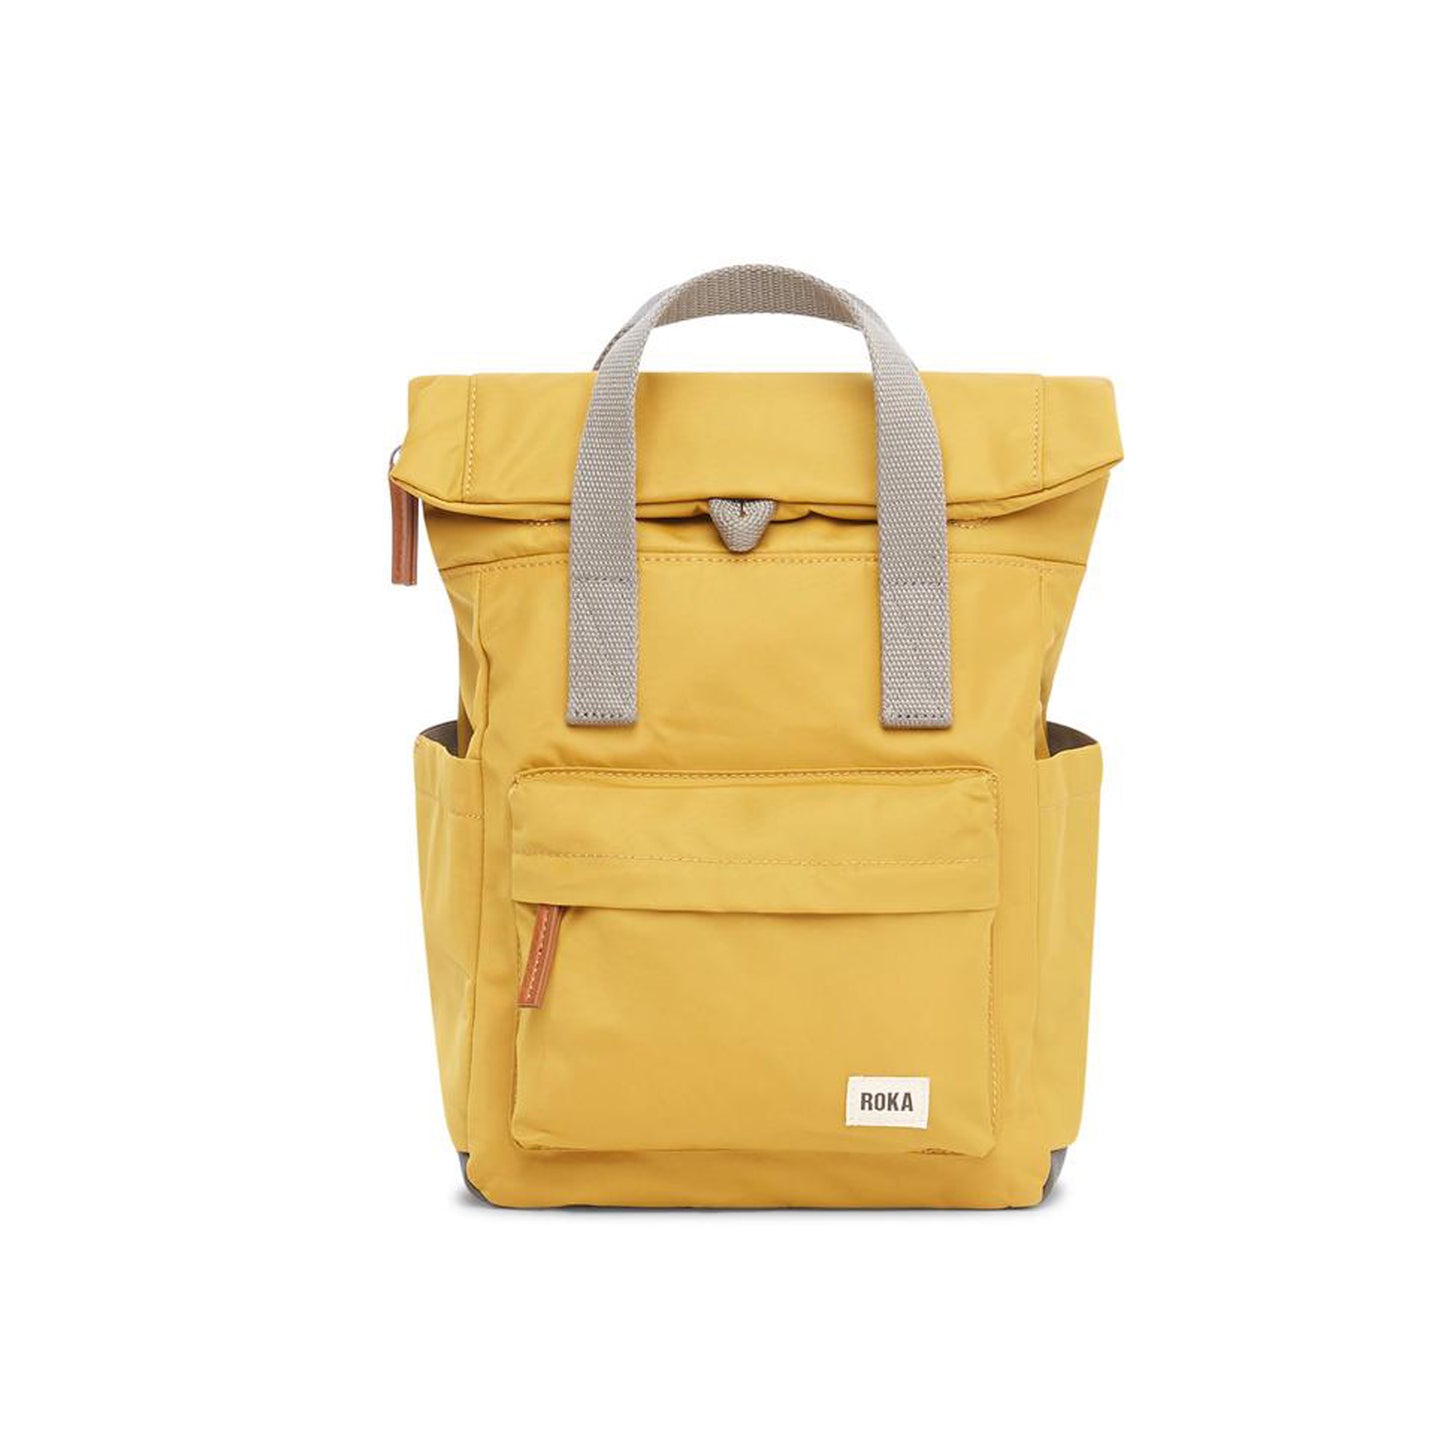 Roka bag in yellow